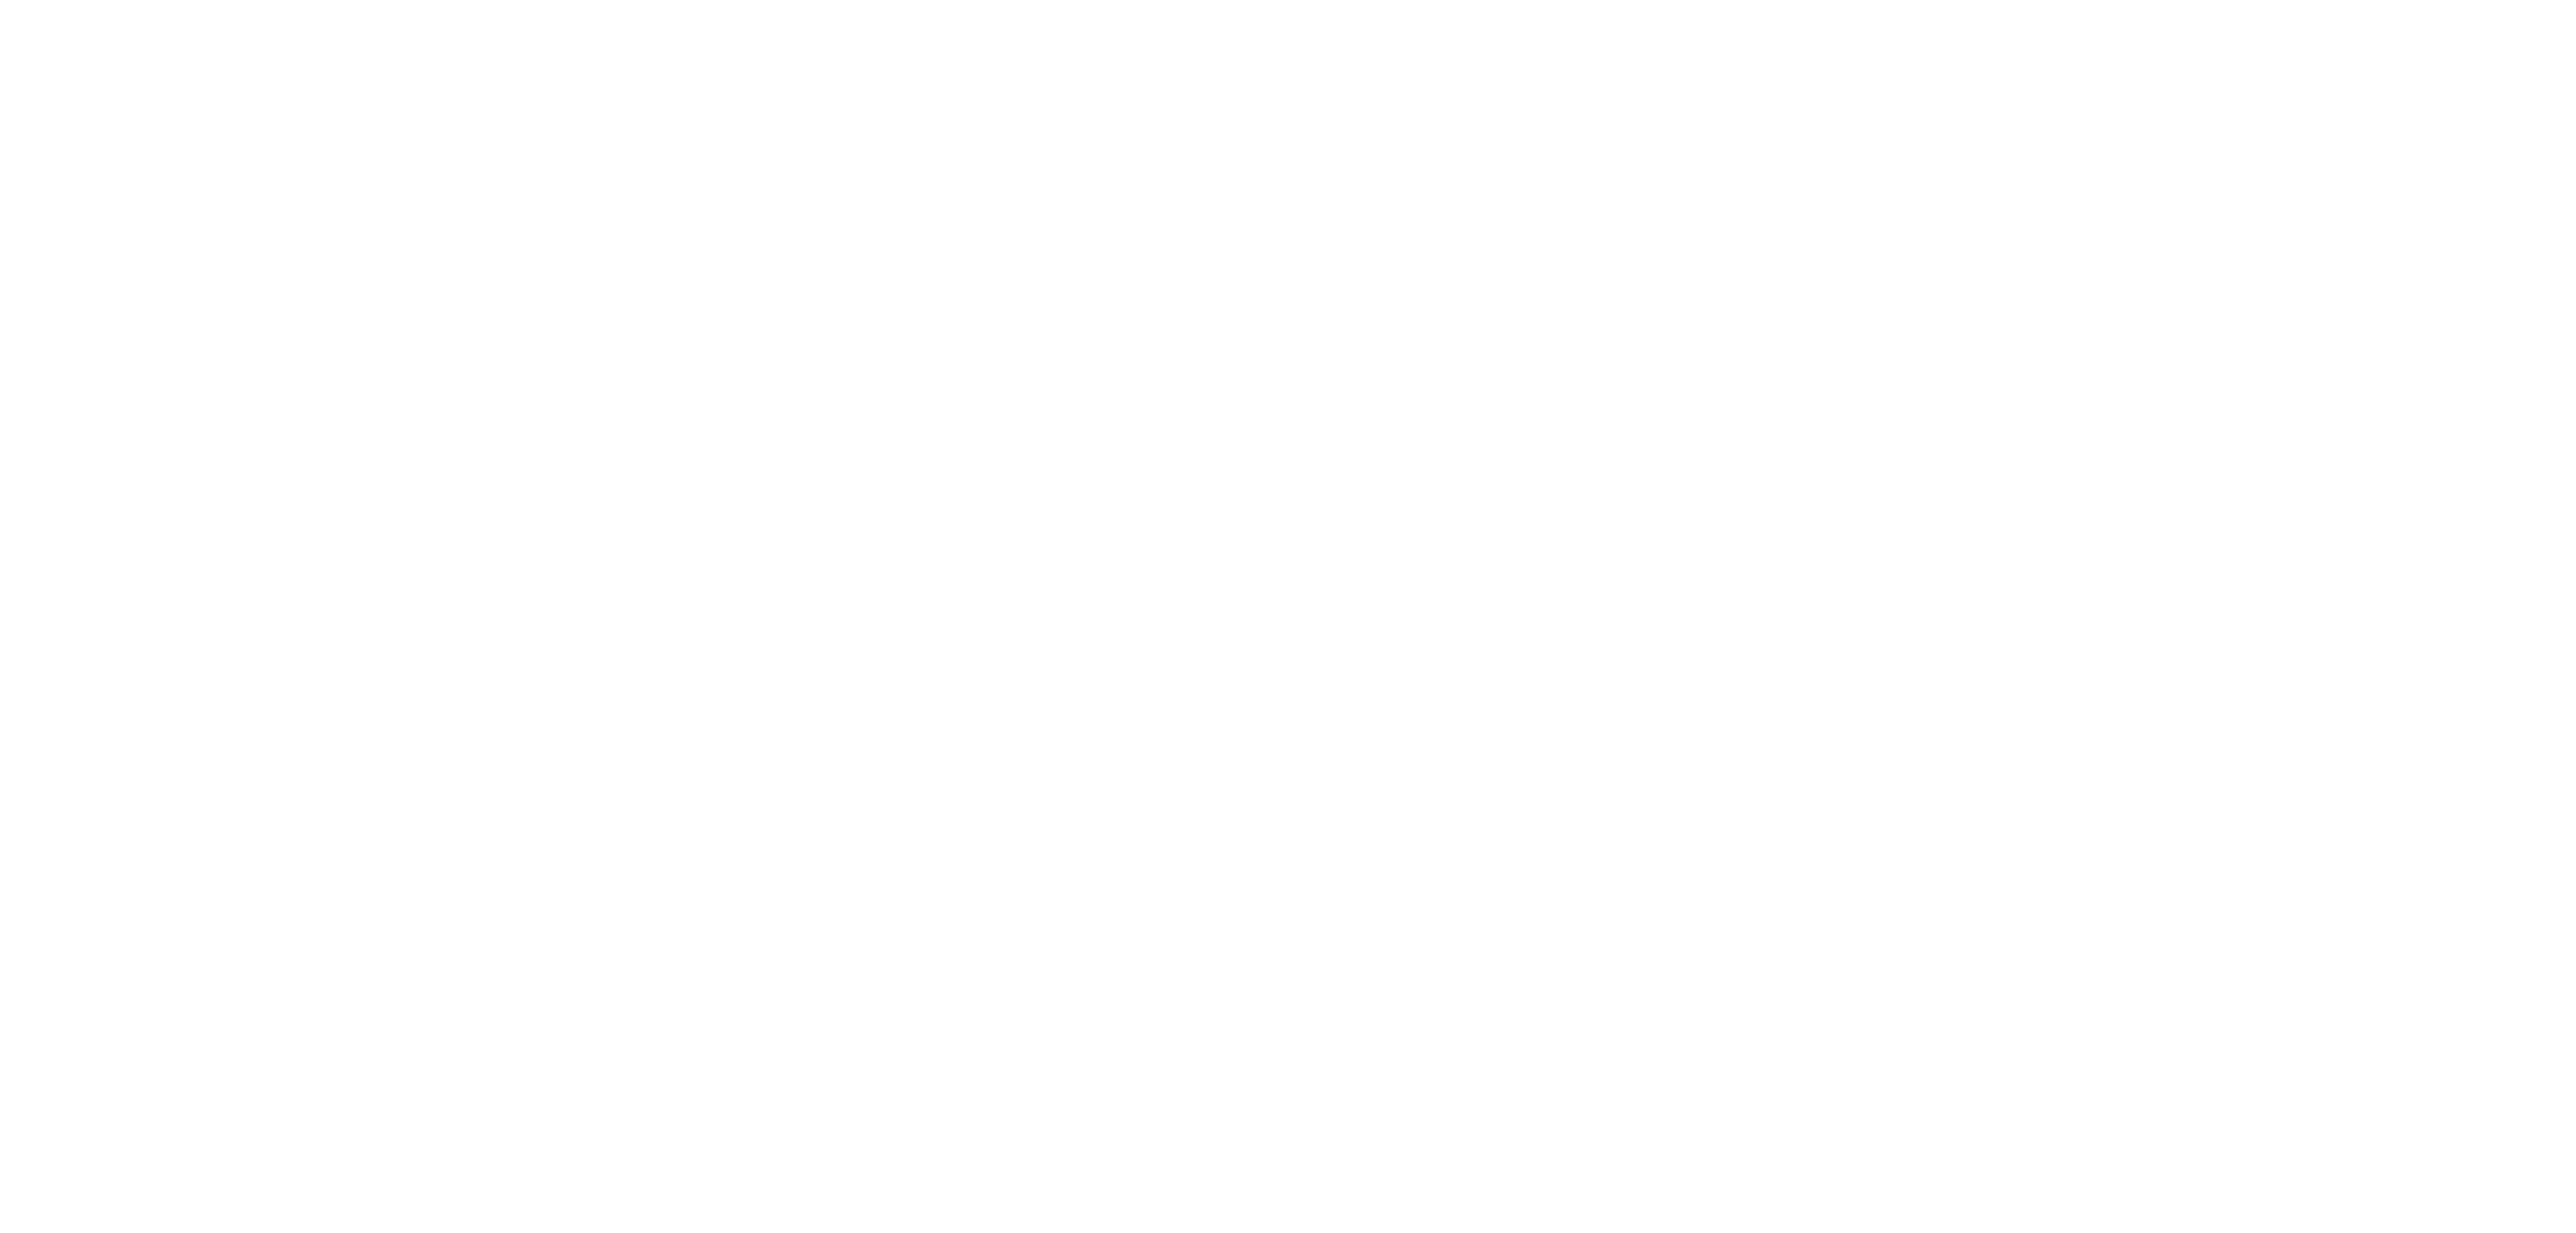 ELNA Medical Logo